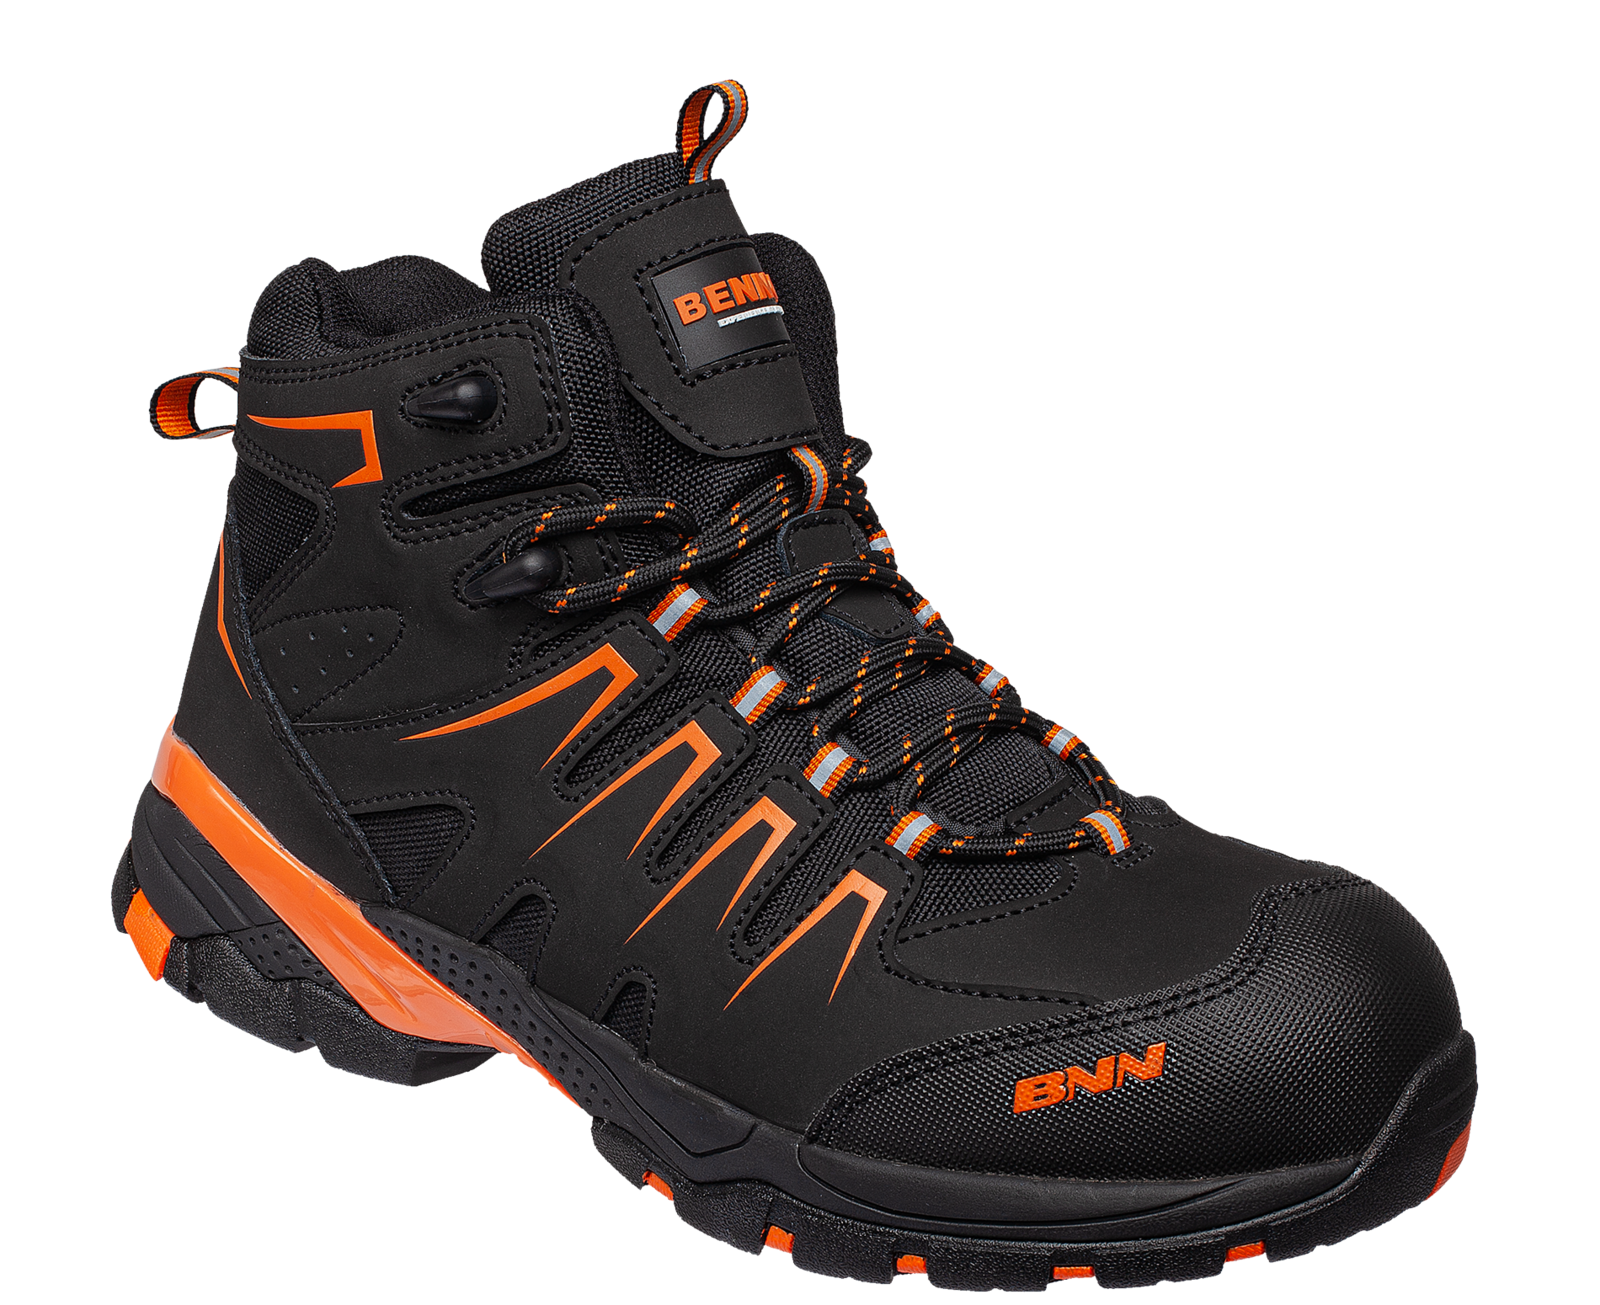 Bezpečnostná členková obuv Bennon Orlando XTR S3 NM High - veľkosť: 46, farba: čierna/oranžová